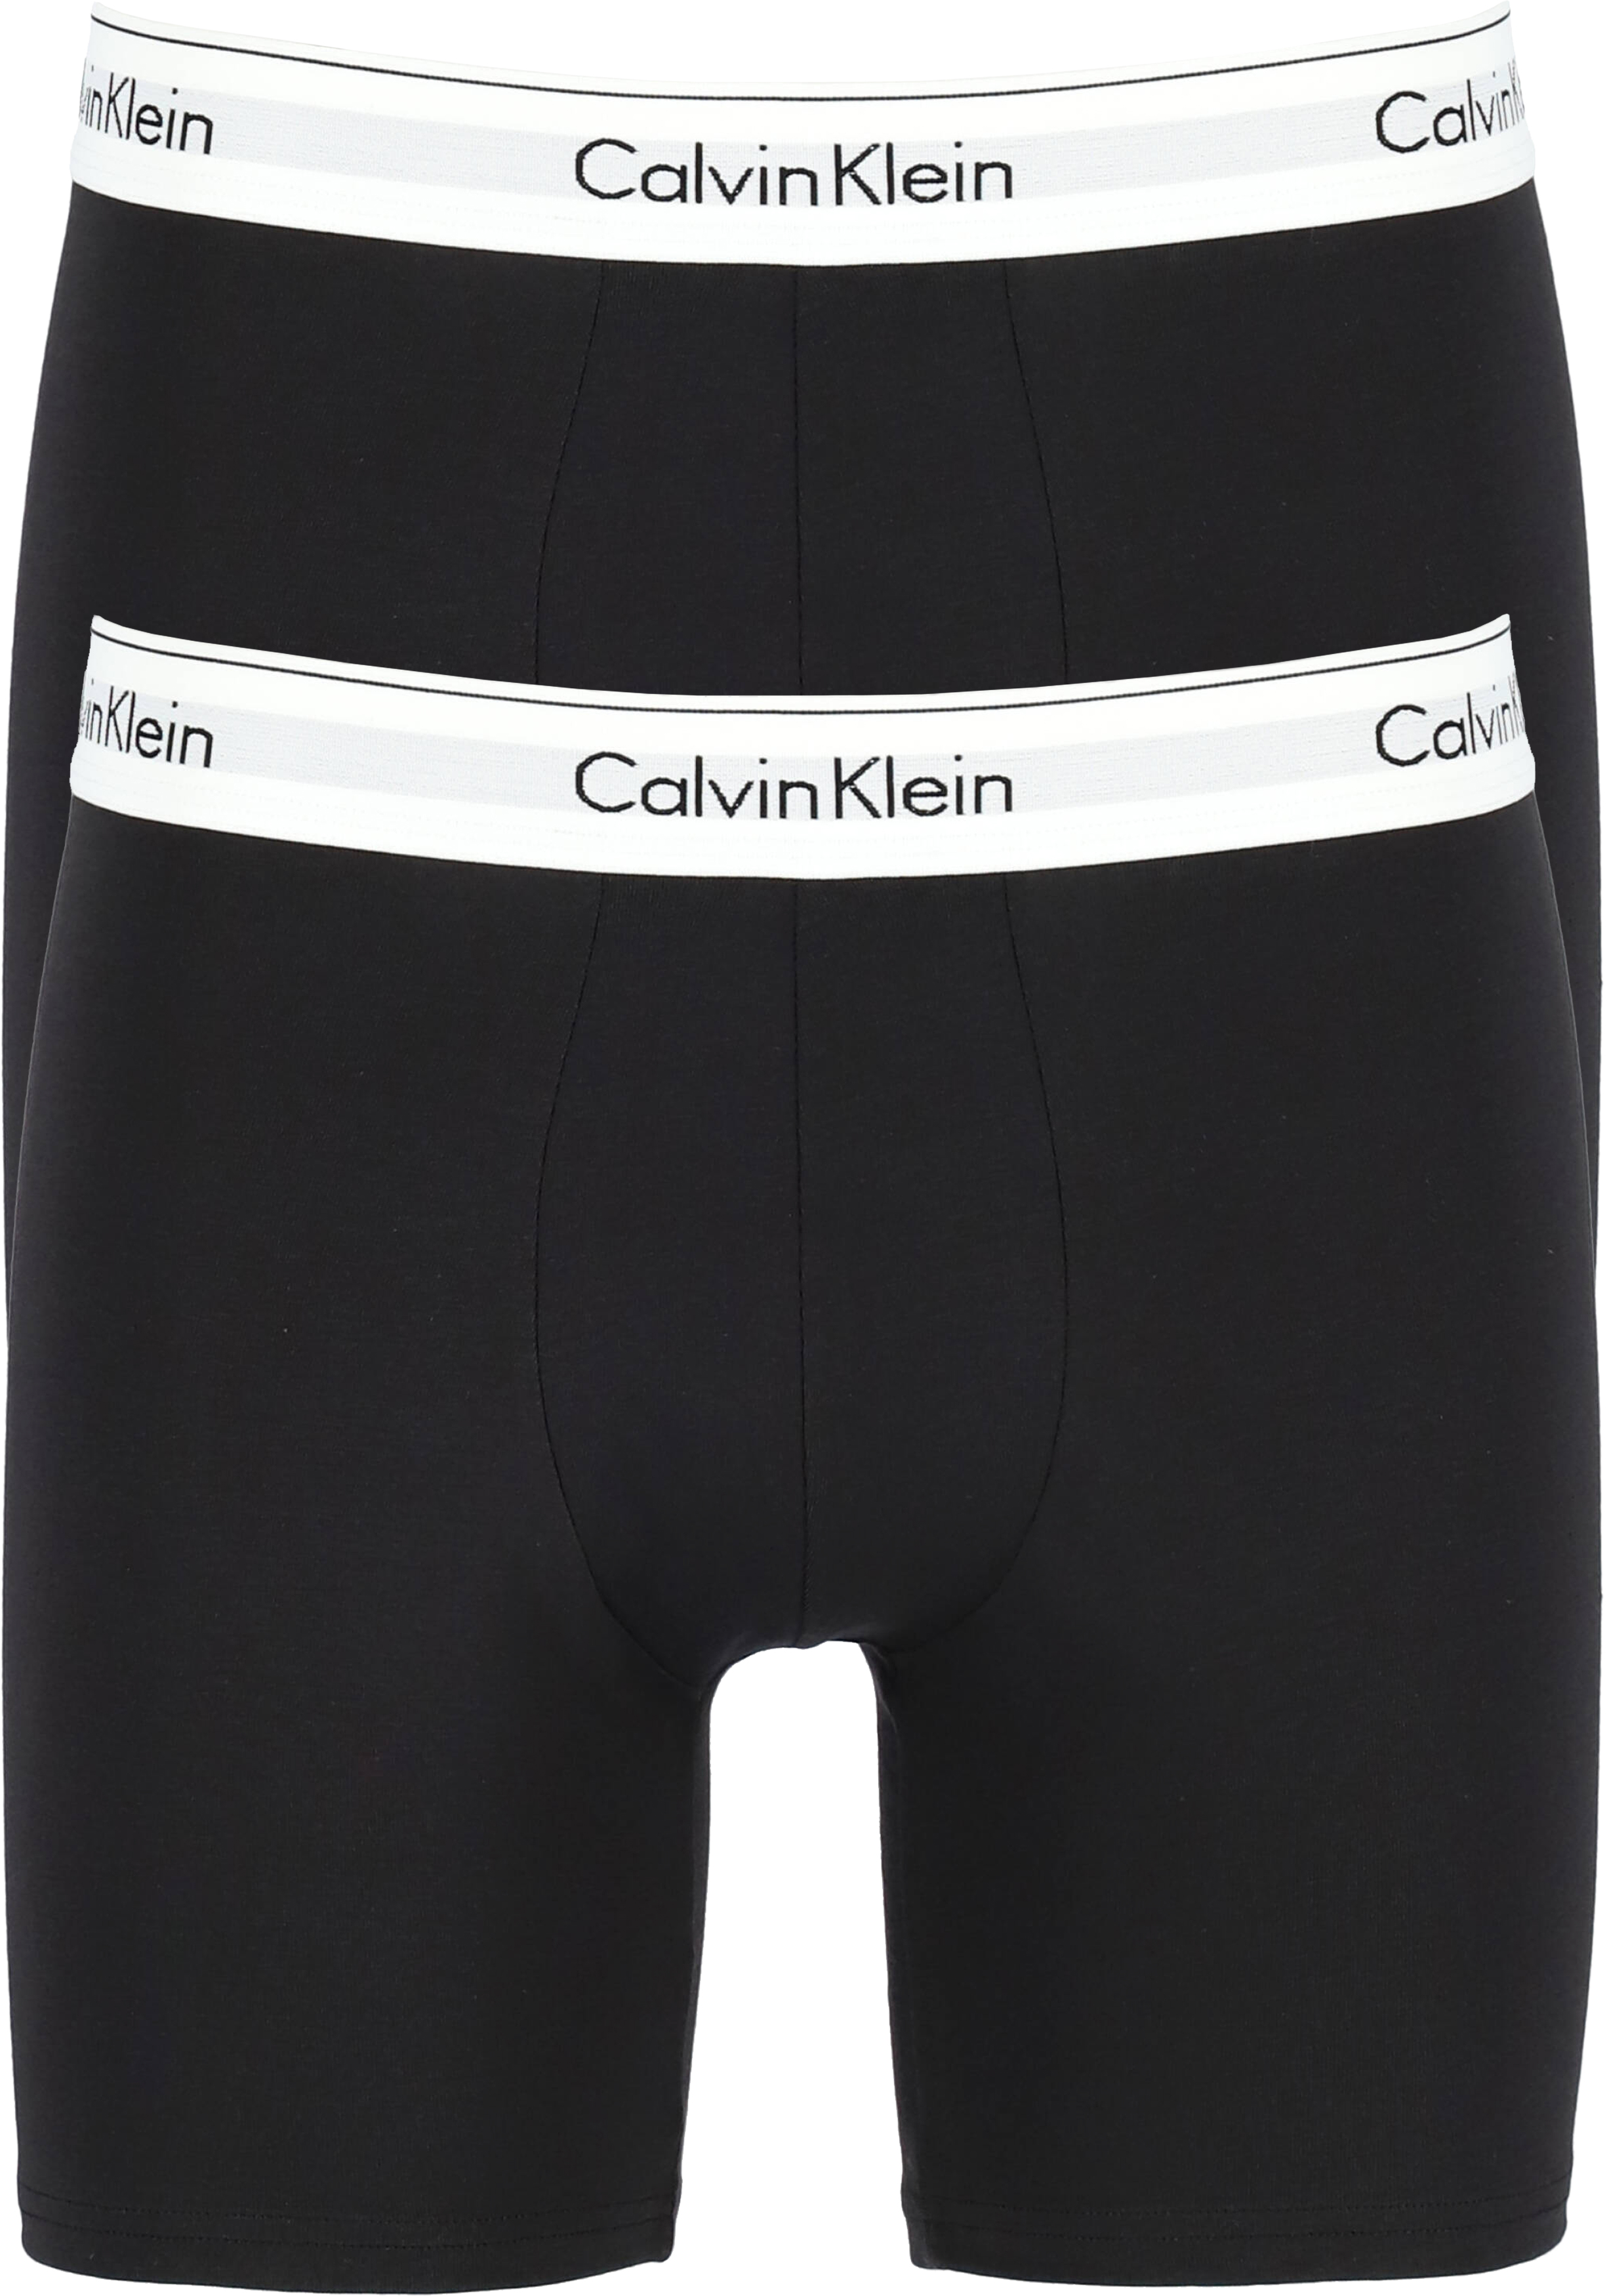 Calvin Klein Modern Cotton boxer brief (2-pack), heren boxers lang, zwart - de nieuwste voorjaarsmode